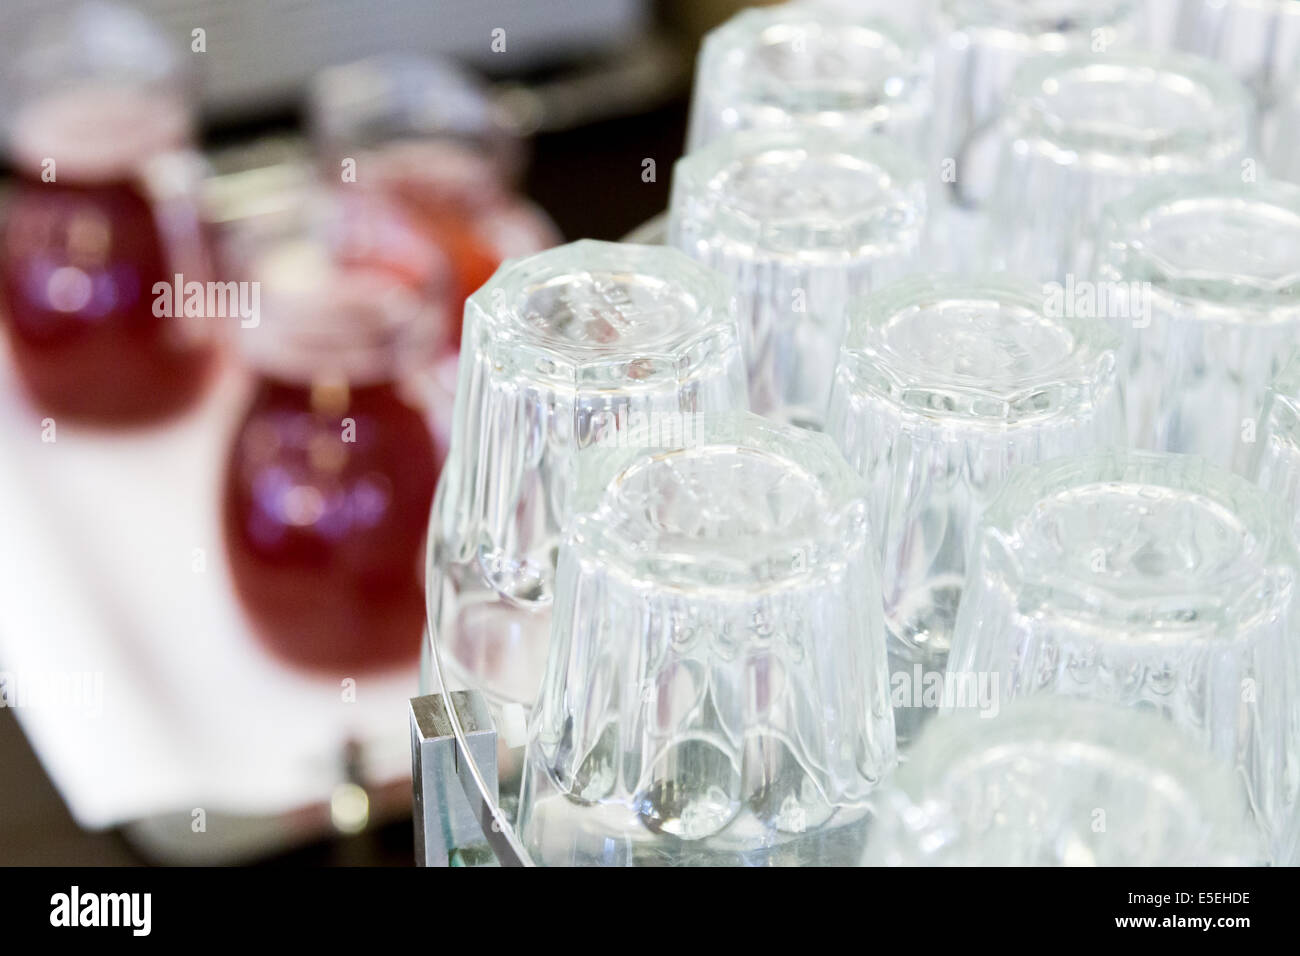 Sottosopra bicchieri sul bancone con gugs di drink rosso Foto Stock